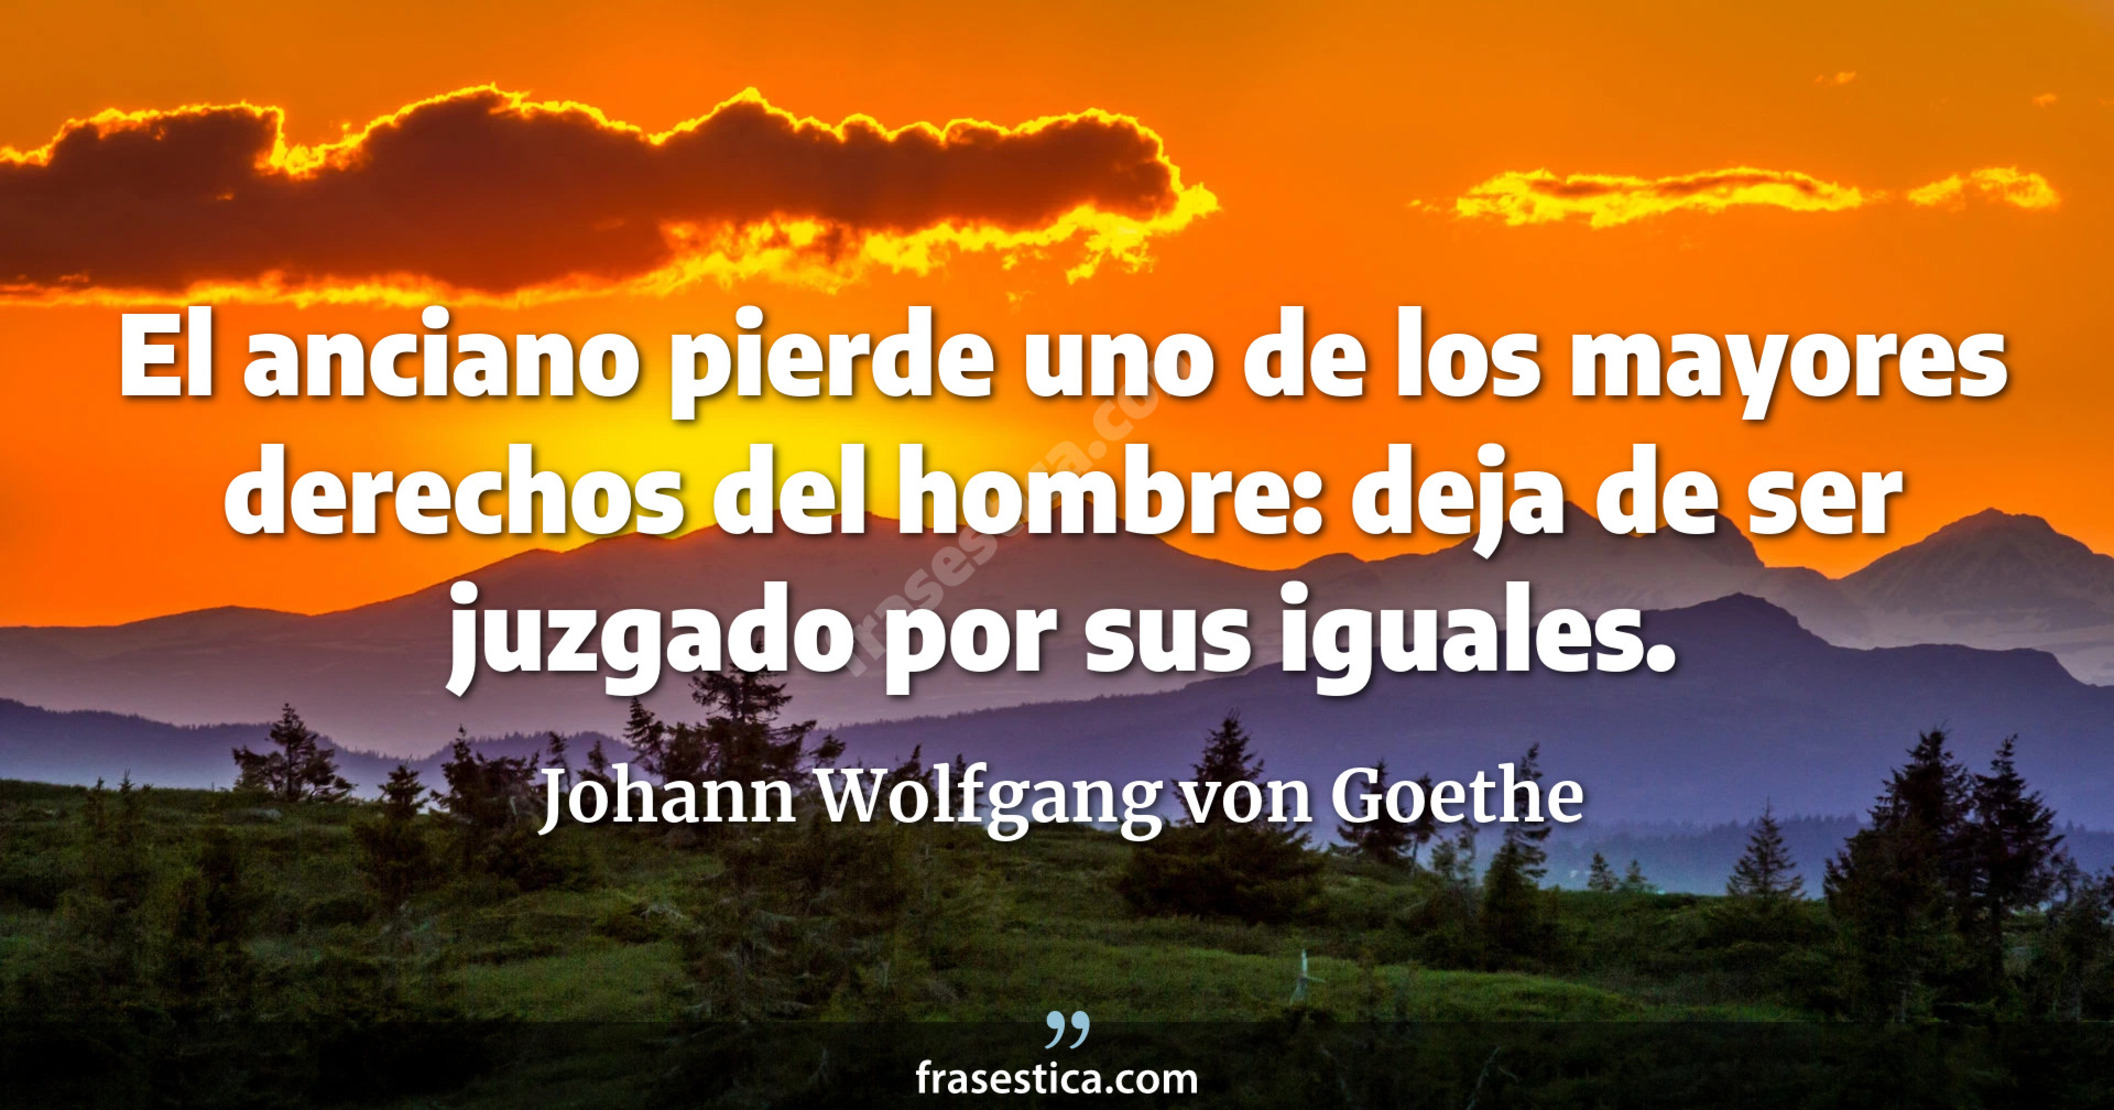 El anciano pierde uno de los mayores derechos del hombre: deja de ser juzgado por sus iguales. - Johann Wolfgang von Goethe